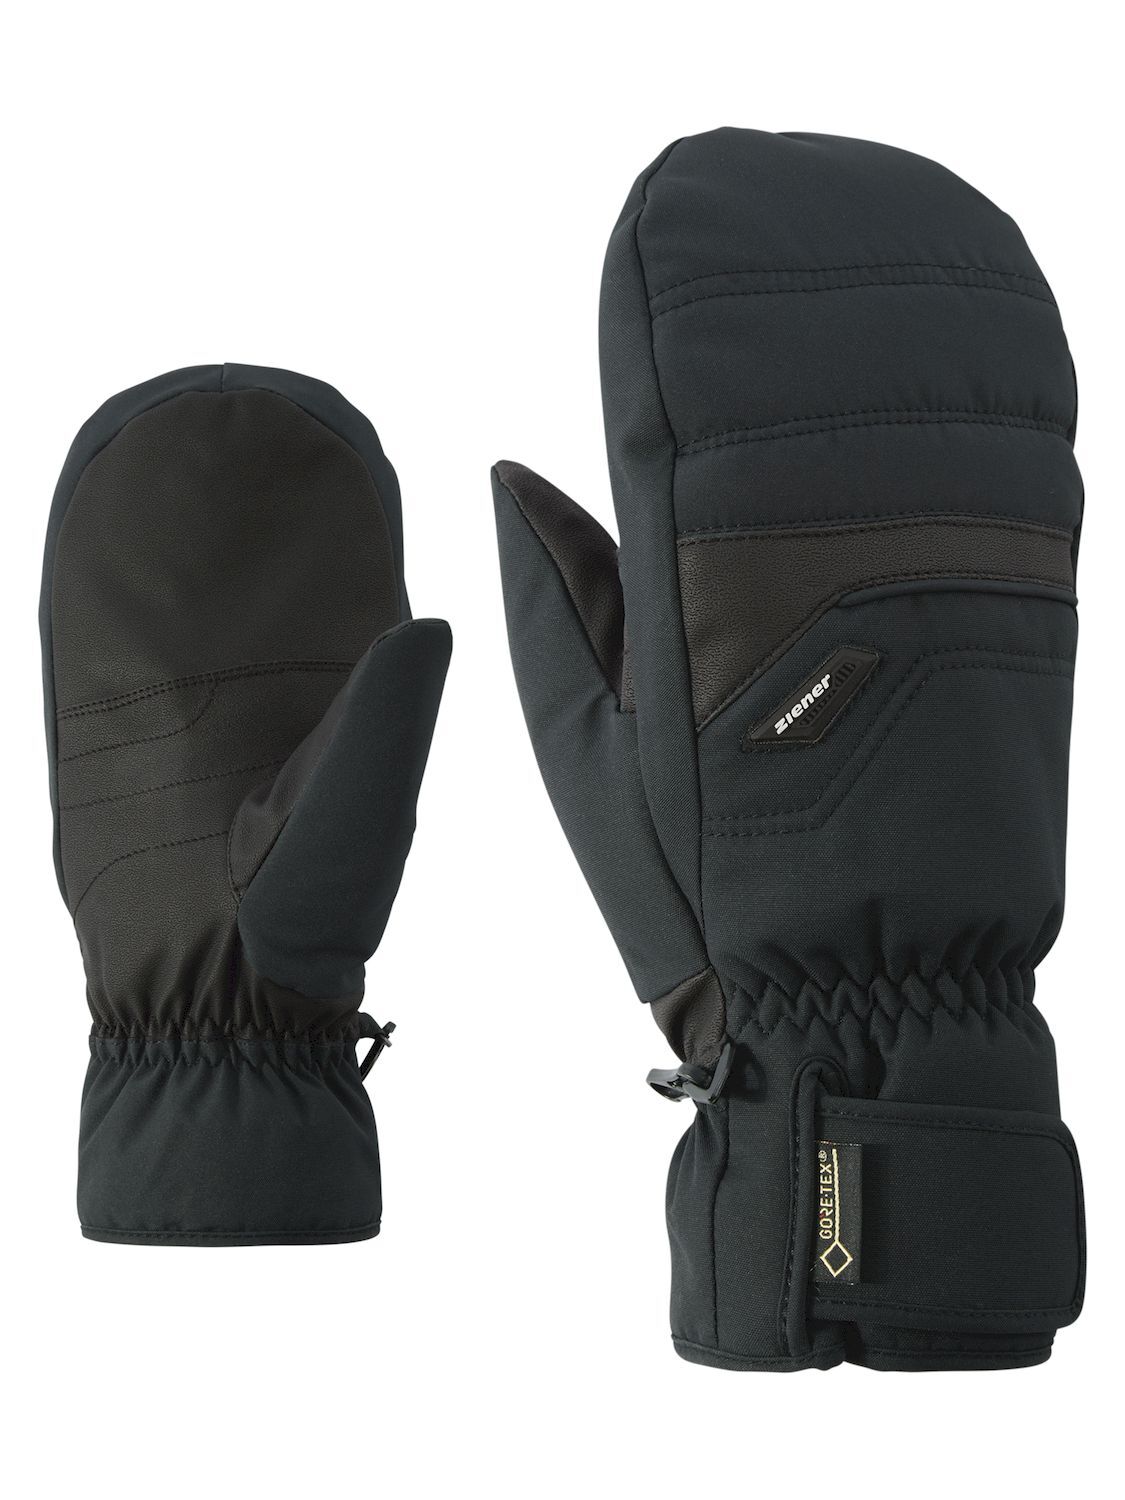 Ziener Glyndal GTX + Gore Plus Warm Mitten - Ski gloves